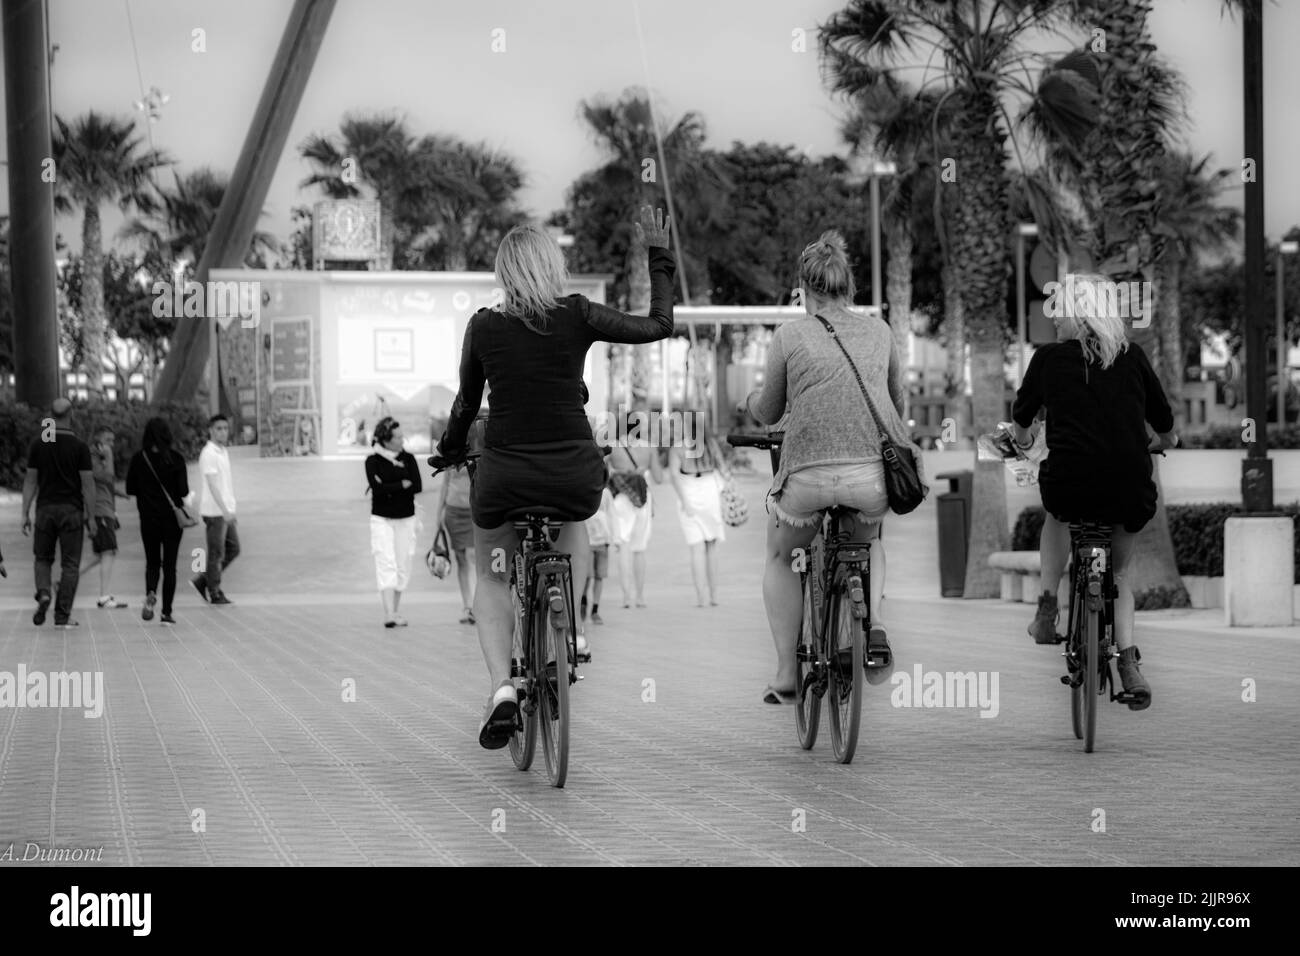 Une photo en niveaux de gris de trois femmes qui font du vélo en plein air Banque D'Images